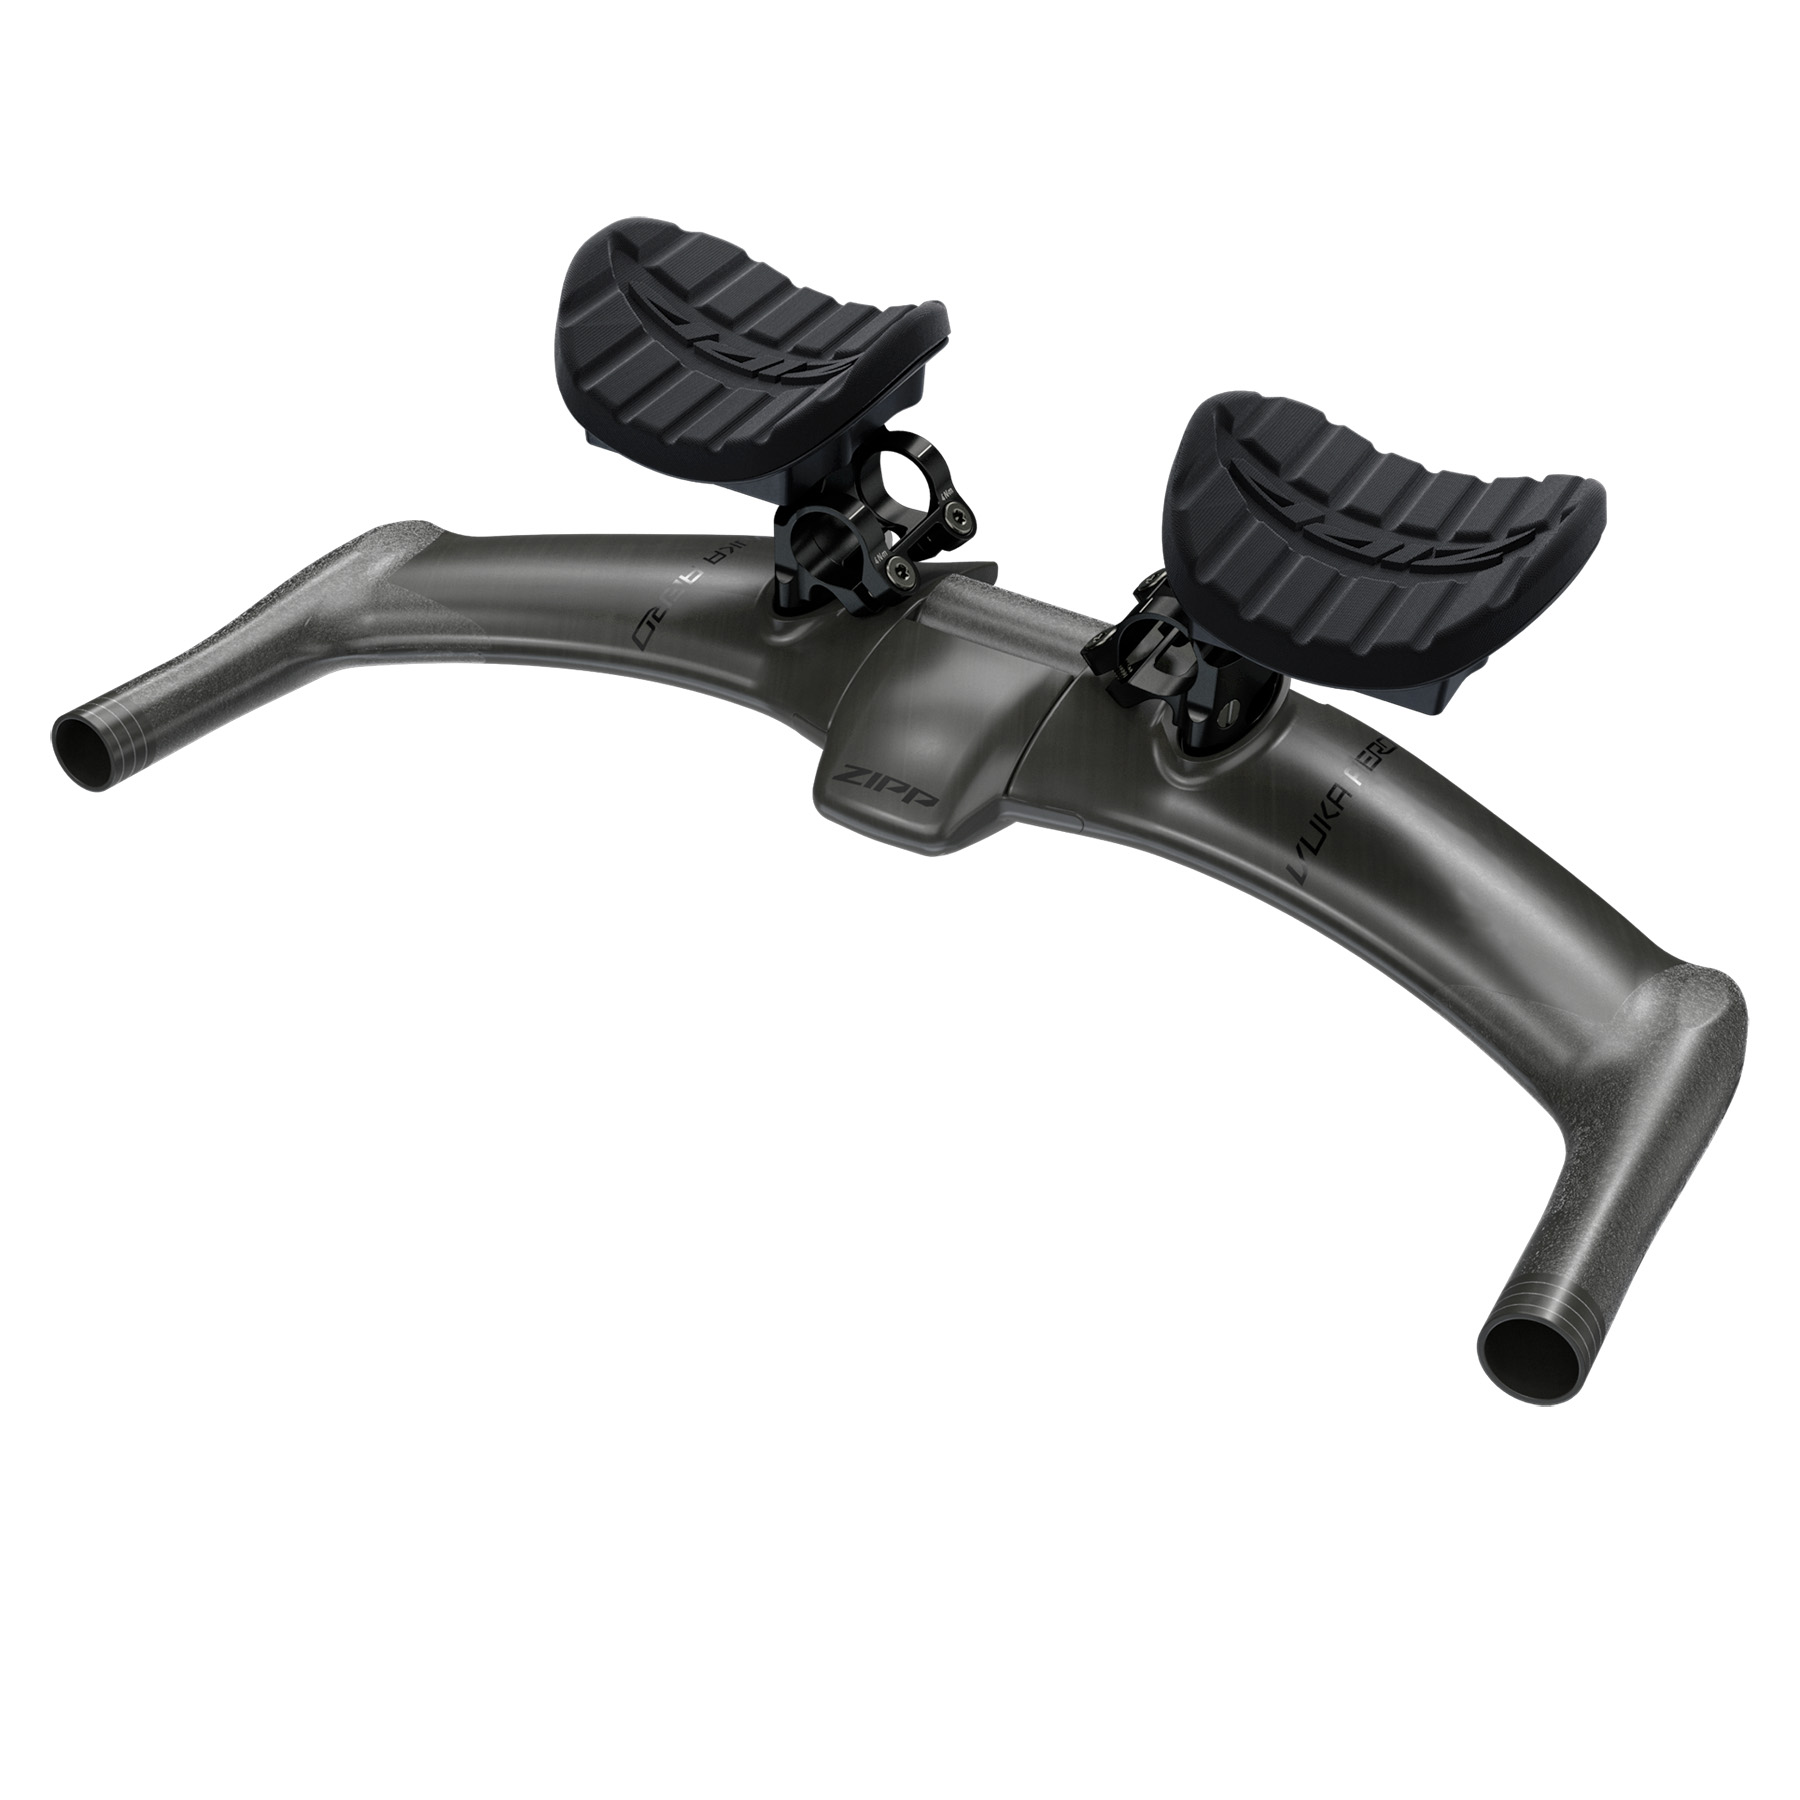 Produktbild von ZIPP Vuka Aero Integrated Carbon Aerobar - Triathlonlenker - schwarz